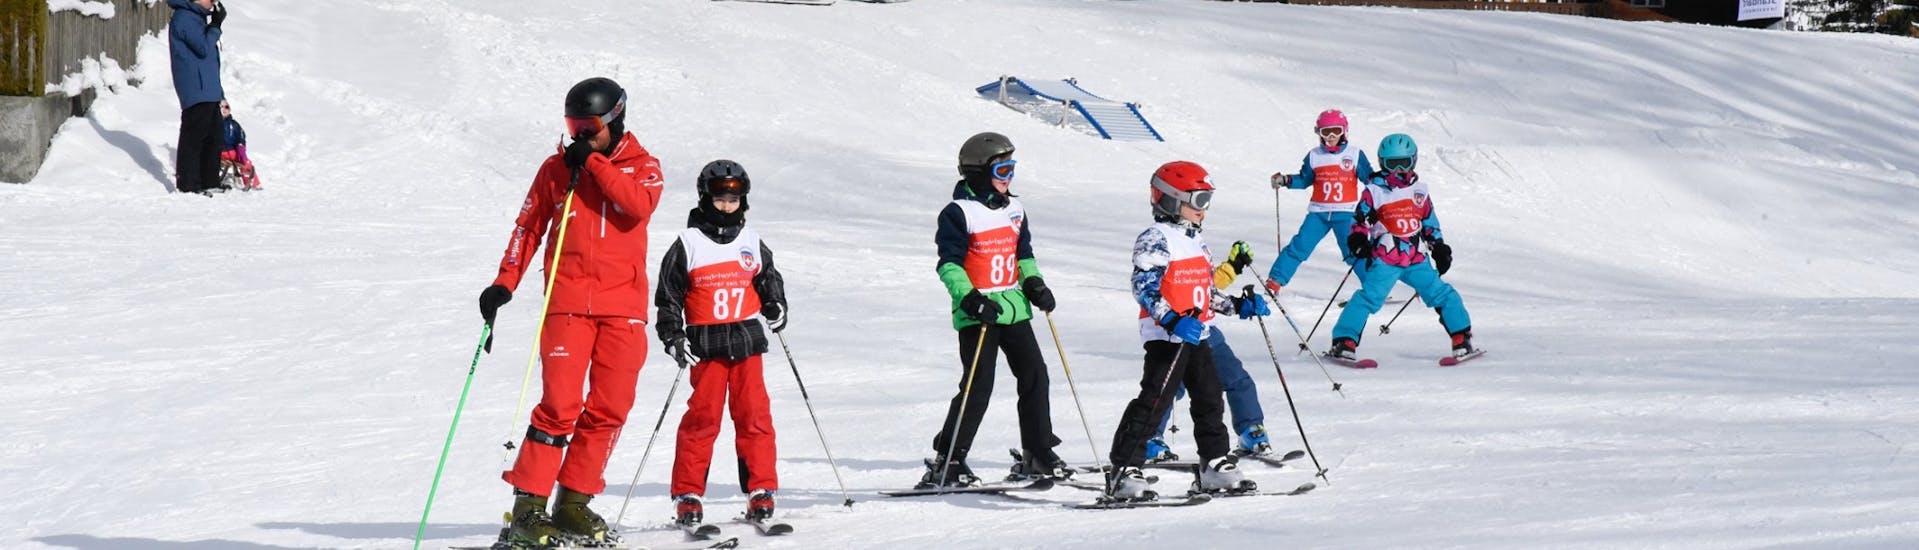 Während des Kinder-Skikurses (3-15 J.) für alle Levels - Männlichen mit der Schweizer Skischule Grindelwald erkundet eine Gruppe von fortgeschrittenen Skifahrern gemeinsam mit dem Skilehrer die Pisten.